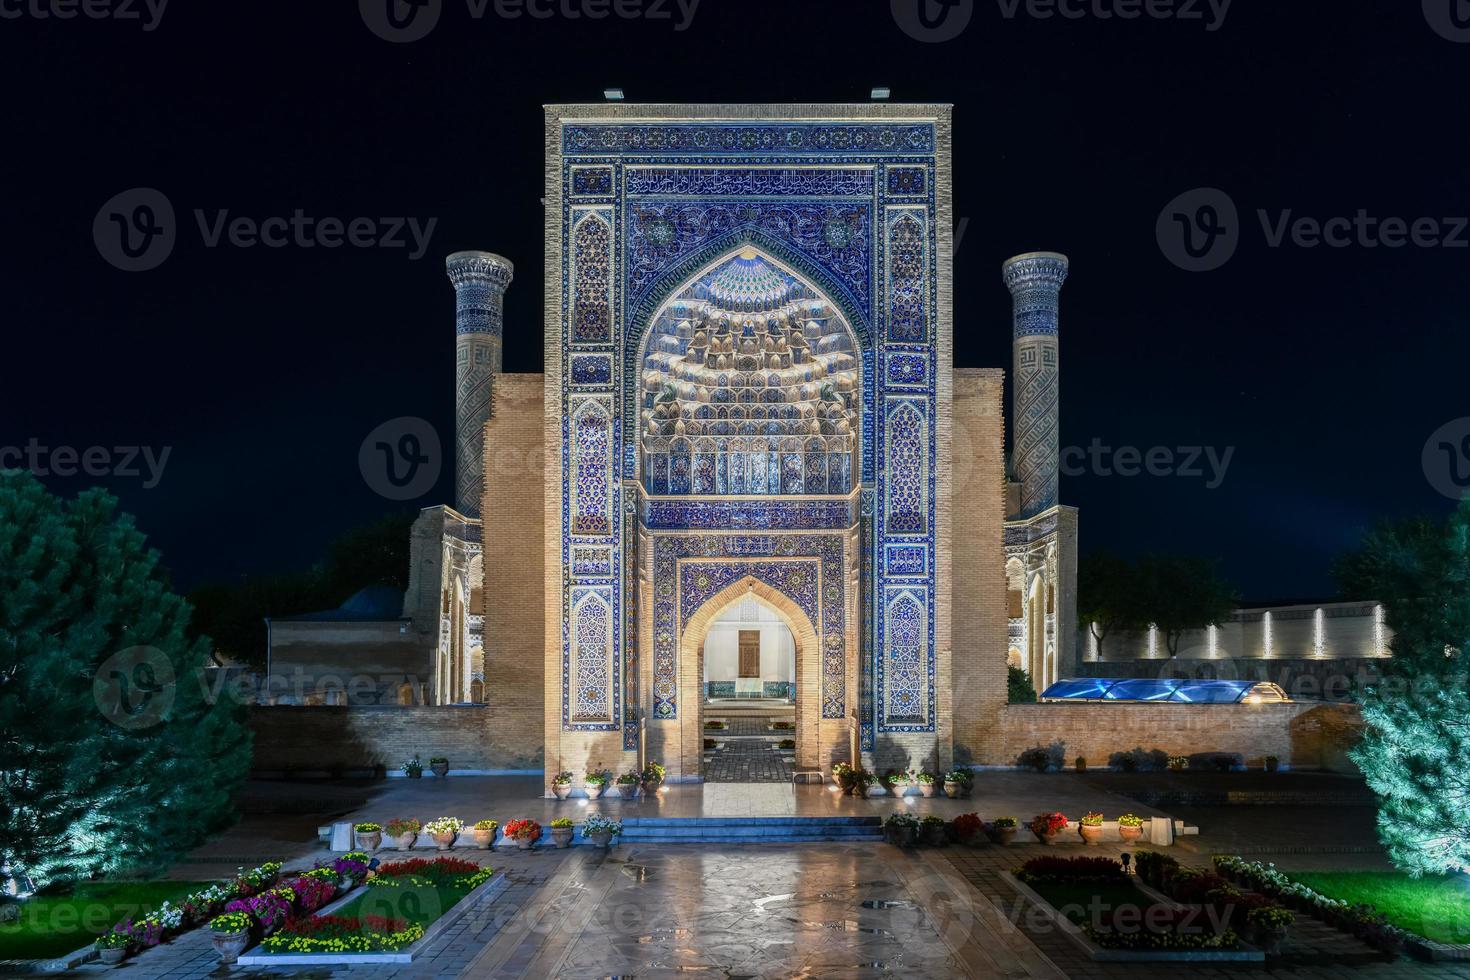 gur-emir-mausoleum von tamerlane und seiner familie in samarkand, usbekistan bei nacht. der Gebäudekomplex stammt aus dem 15. Jahrhundert. foto